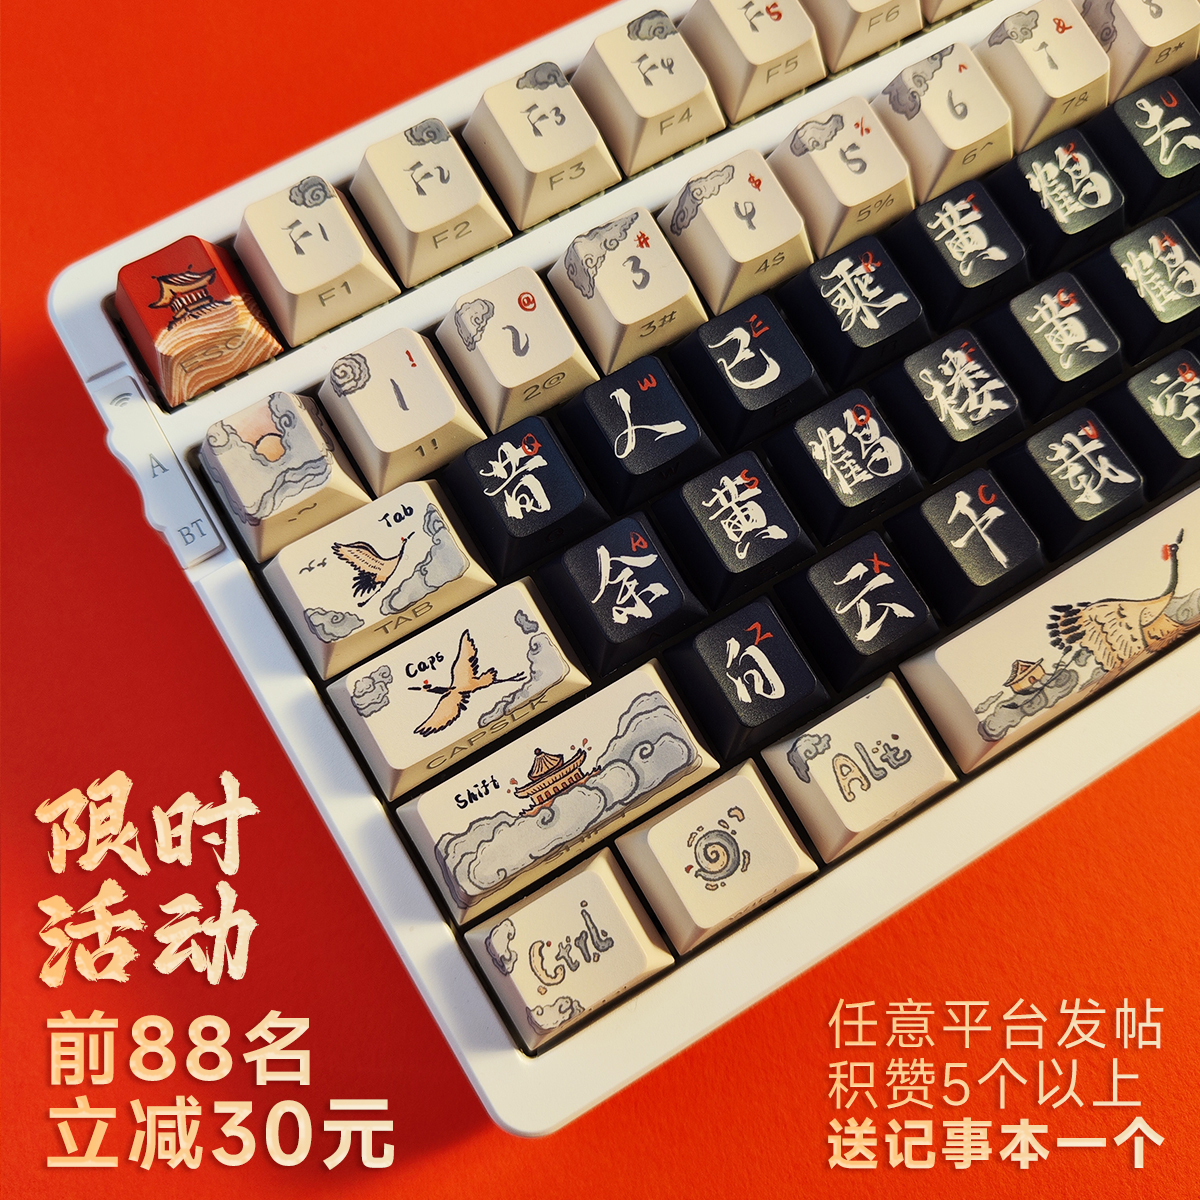 悠悠黄鹤楼 / 水墨书法手绘诗词中国风古风个性创意机械键盘键帽